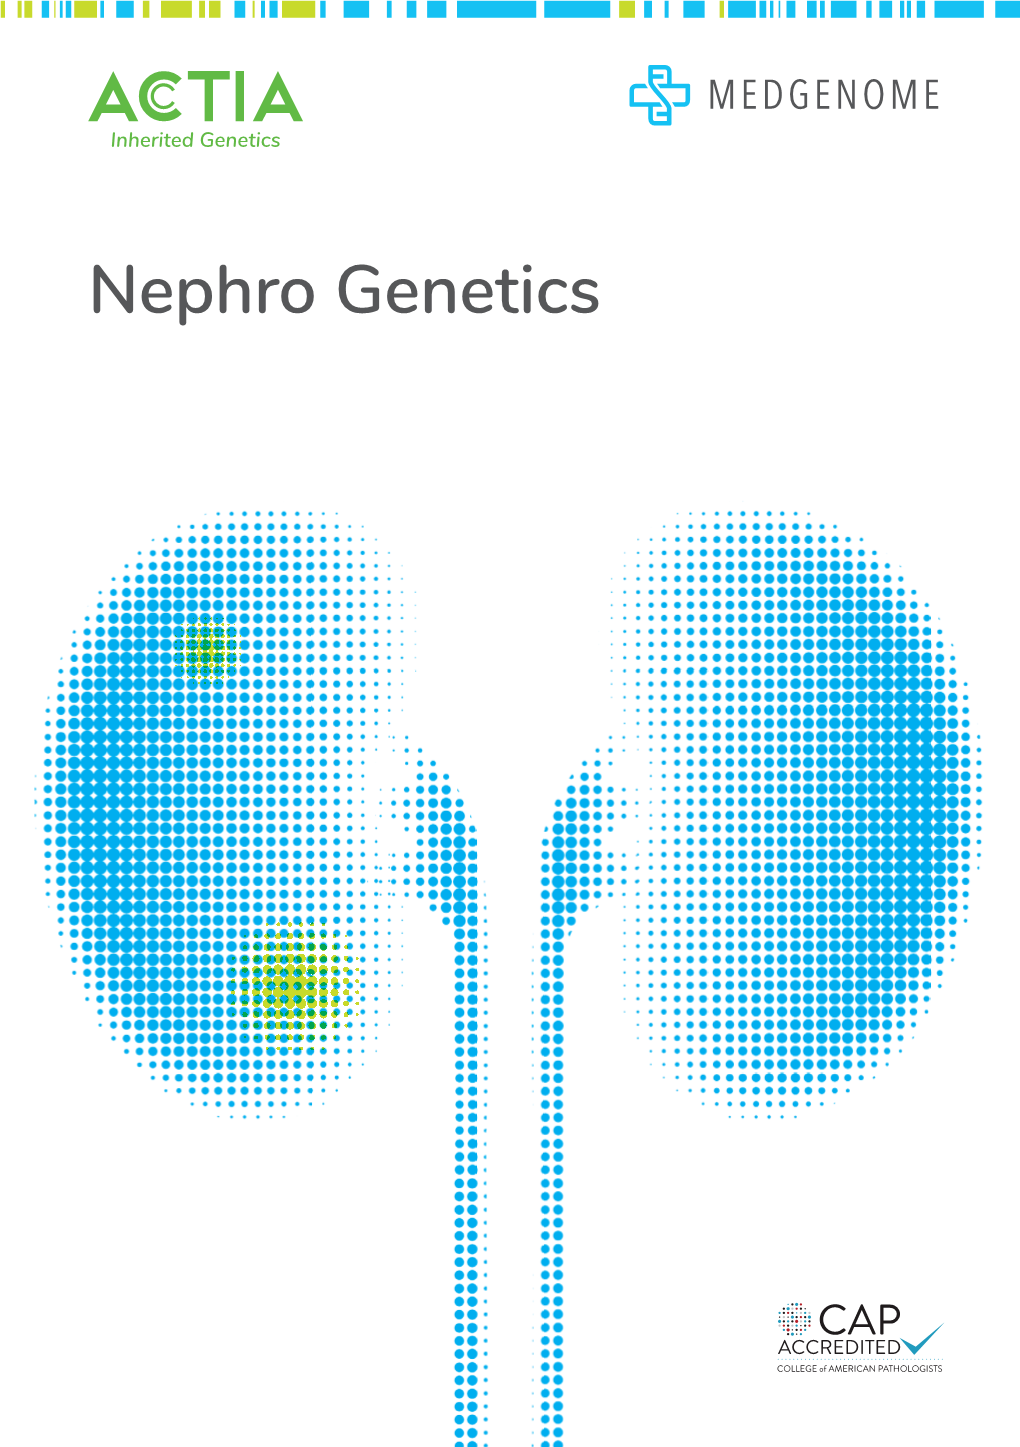 Nephro Genetics Actia Nephro Inherited Genetics Genetics